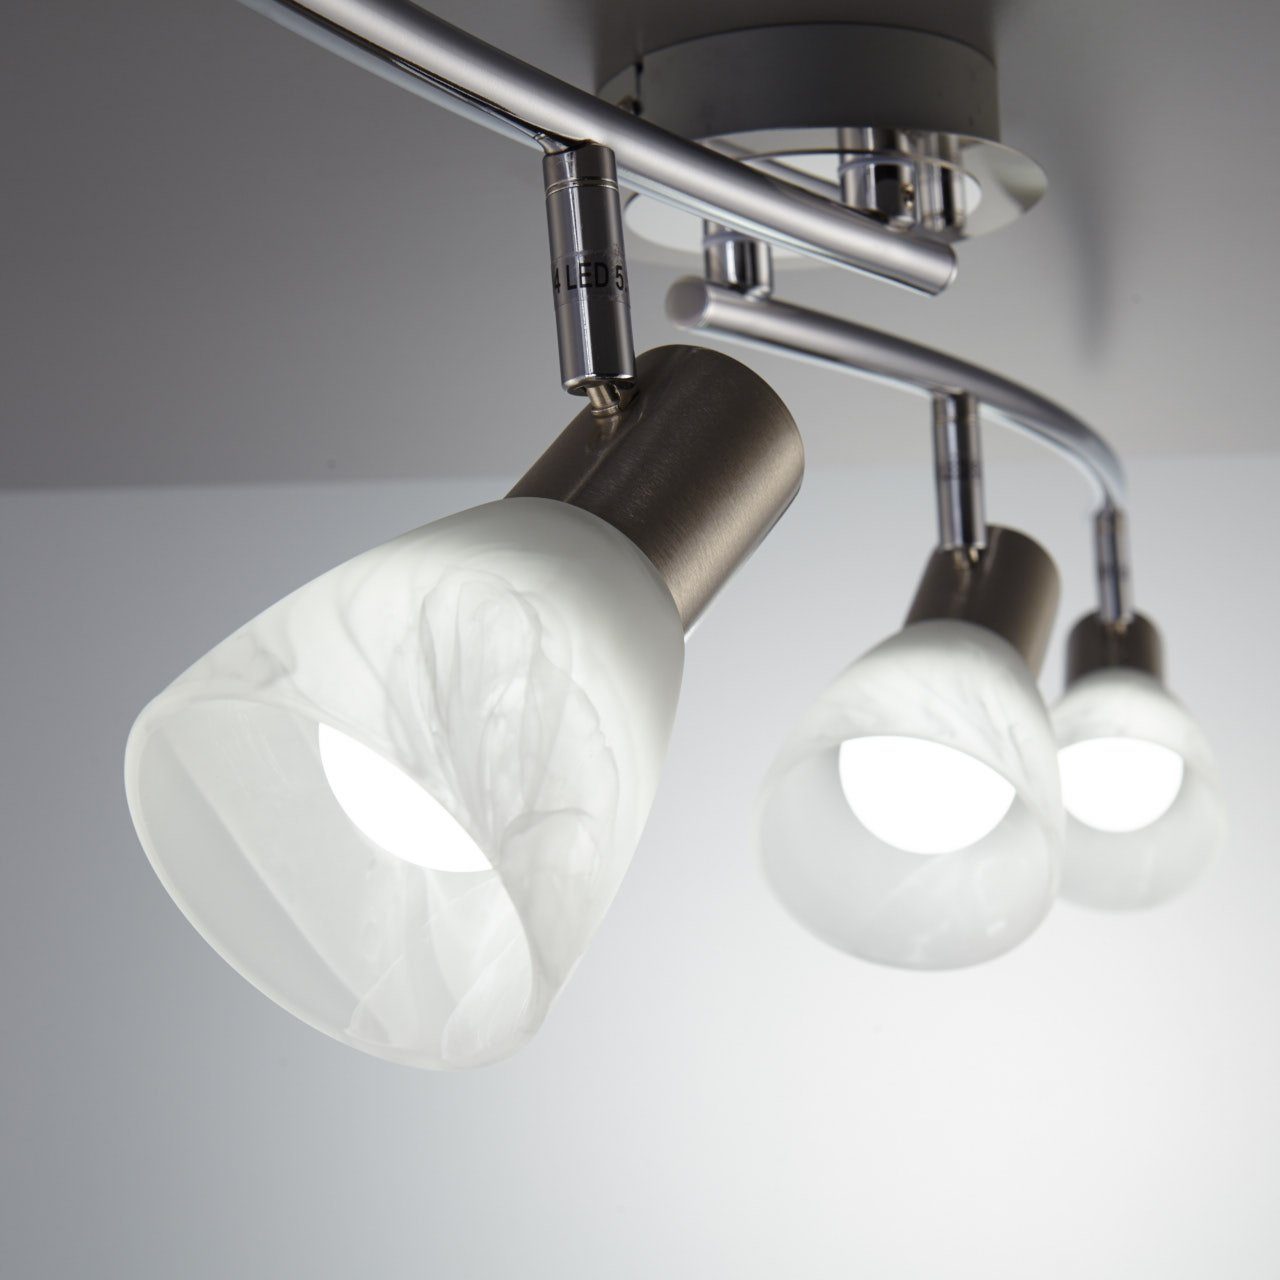 Glas E14 Leuchtmittel Warmweiß, B.K.Licht Metall Leuchte Deckenstrahler, Deckenlampe LED Spot Wohnzimmer LED wechselbar, schwenkbar